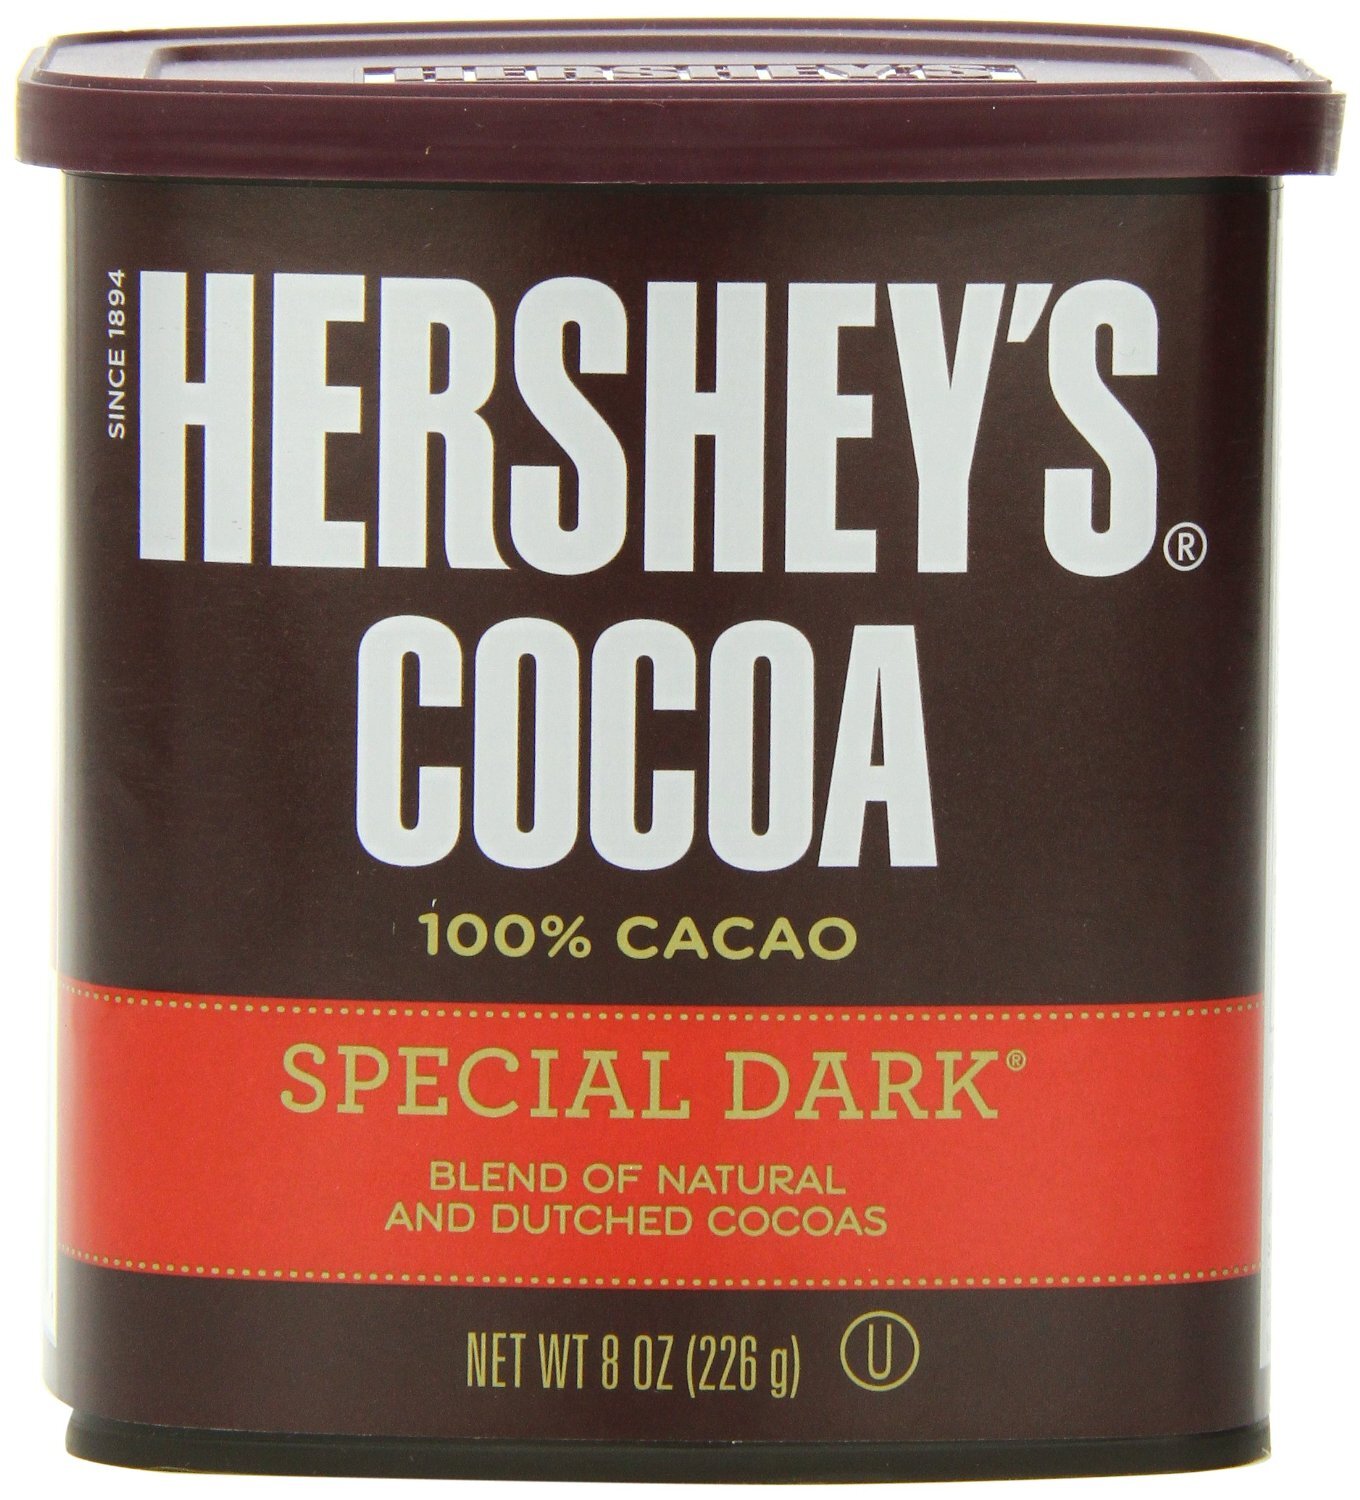 Bột cacao Hershey's không đường 226g